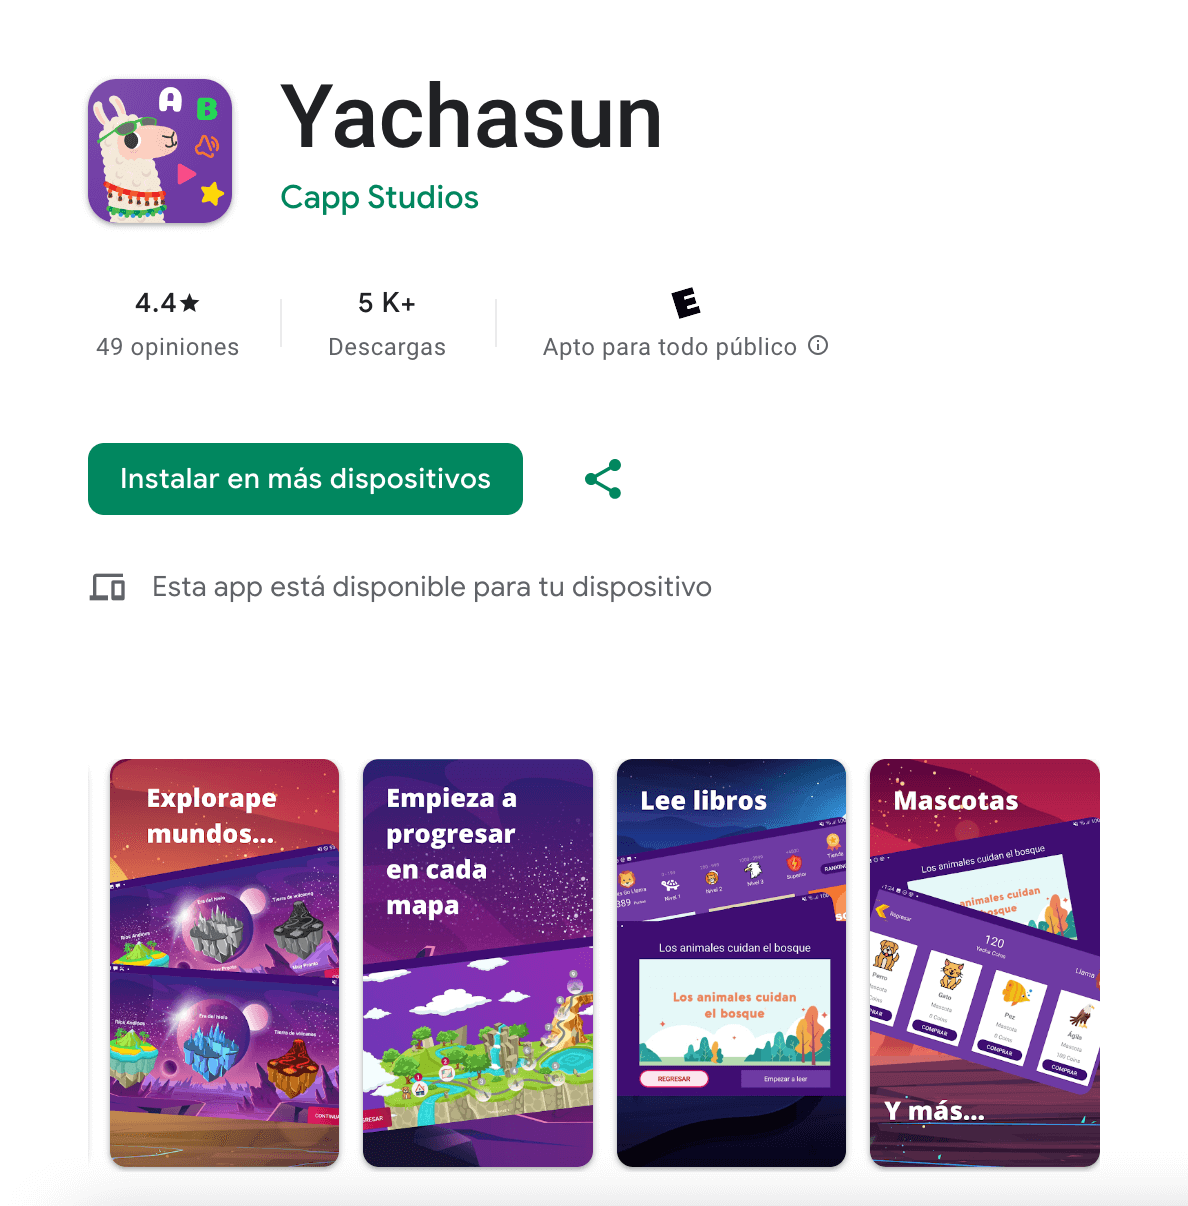 Yachasun App #1 en Libros